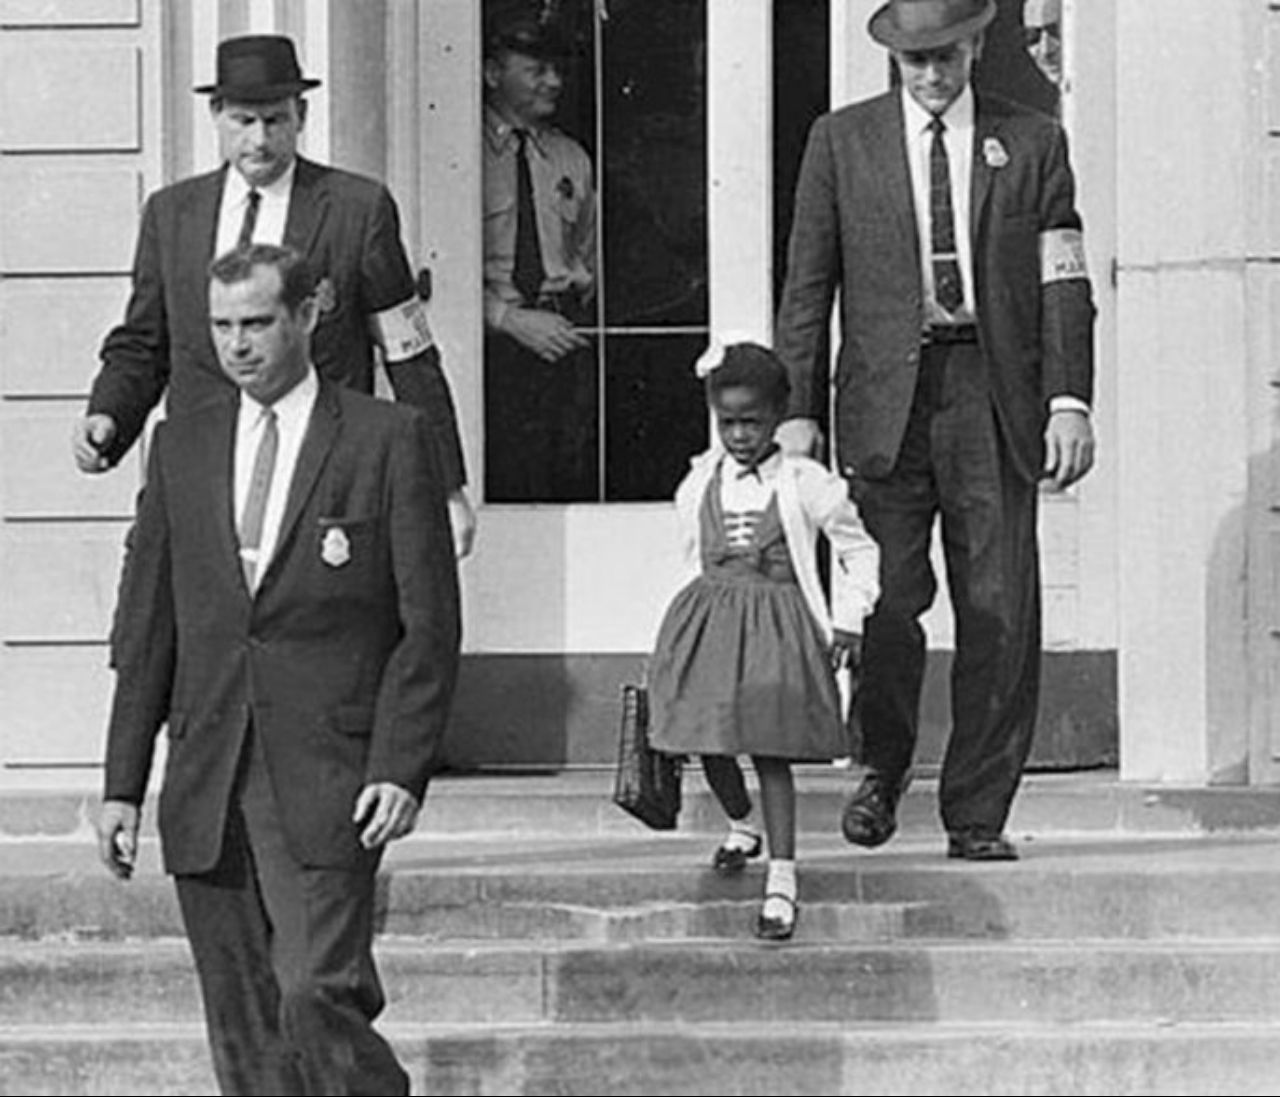 اولین سیاهپوستی که به مدرسه رفت + عکس